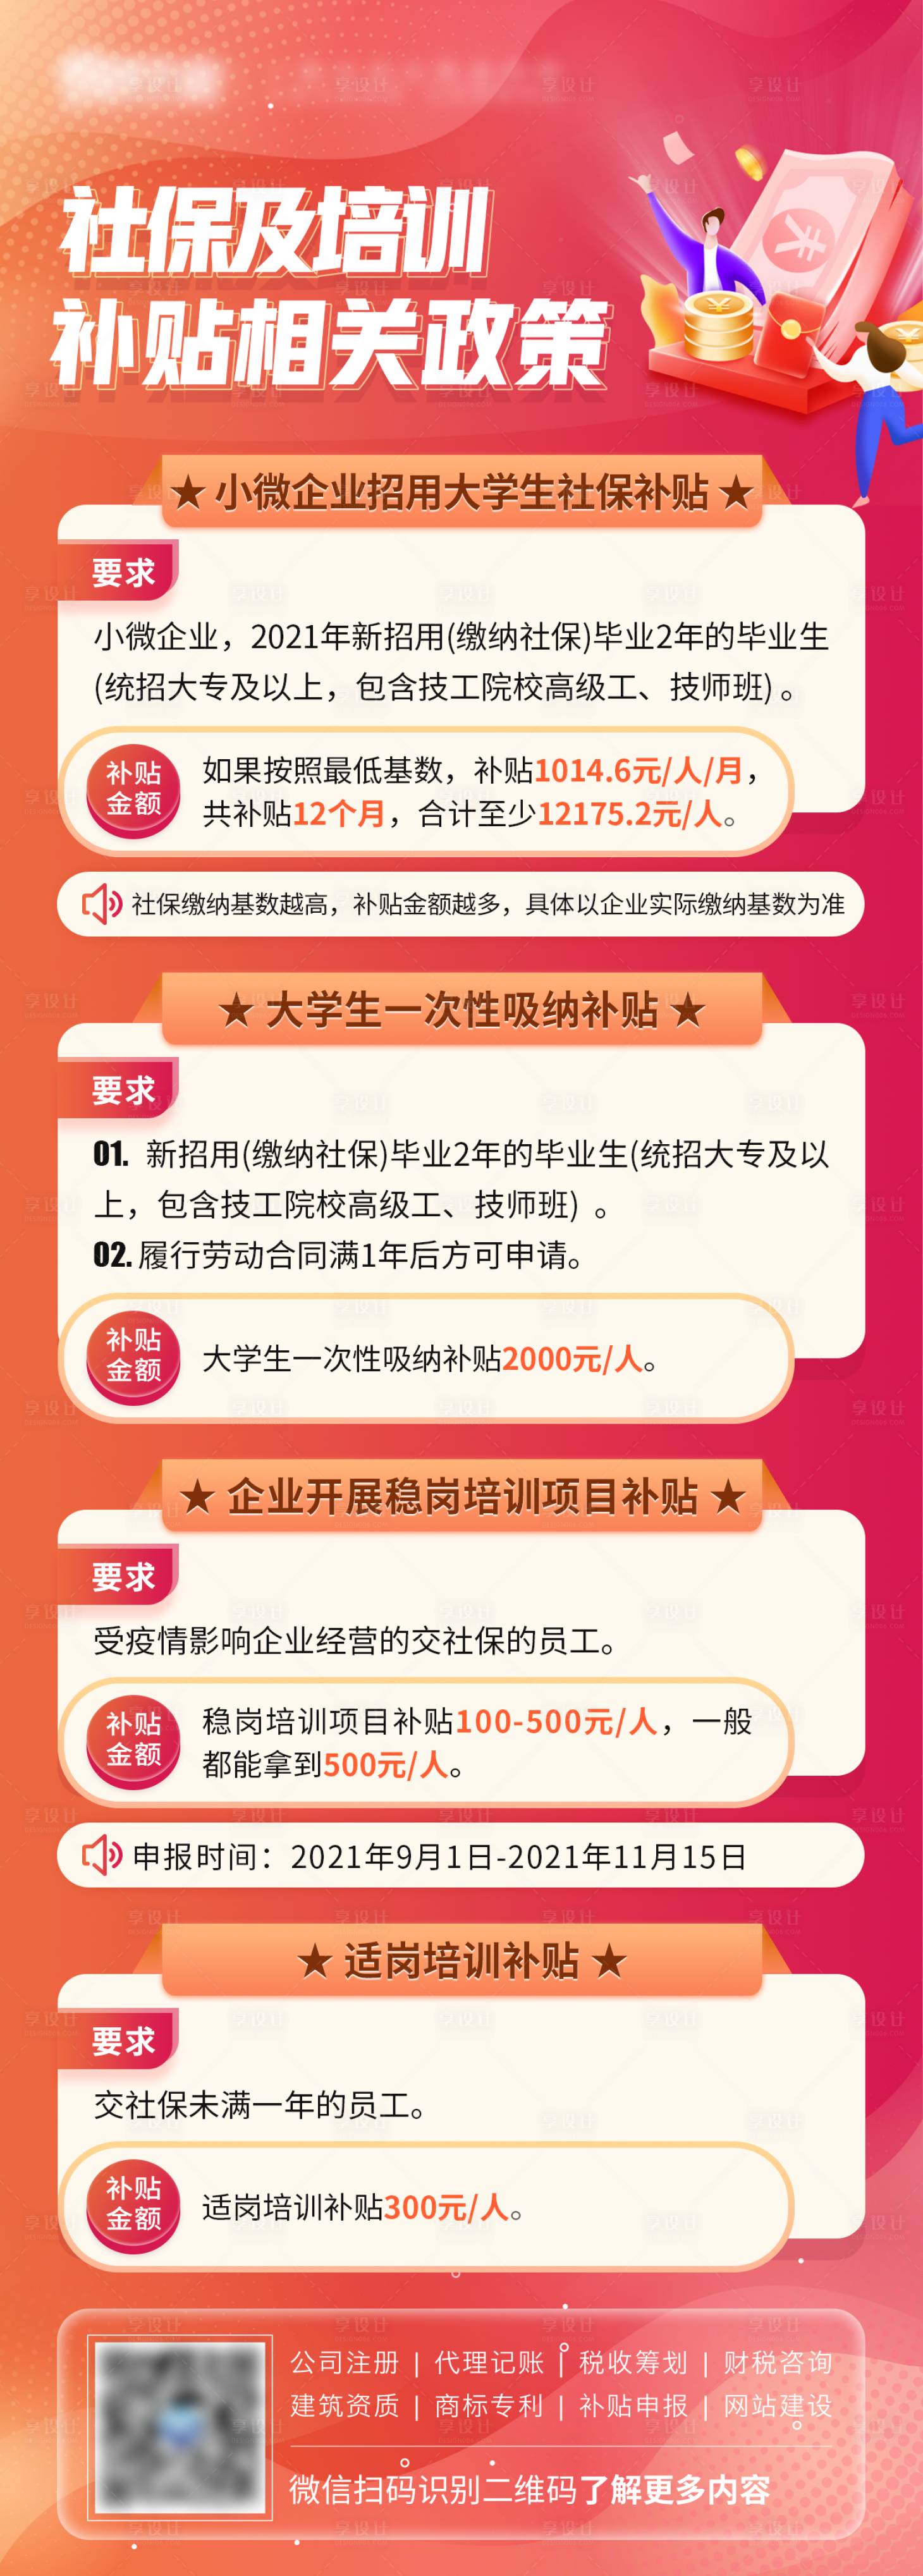 搞钱人看过来！深圳创业补贴10万元助力创业梦-搜狐大视野-搜狐新闻